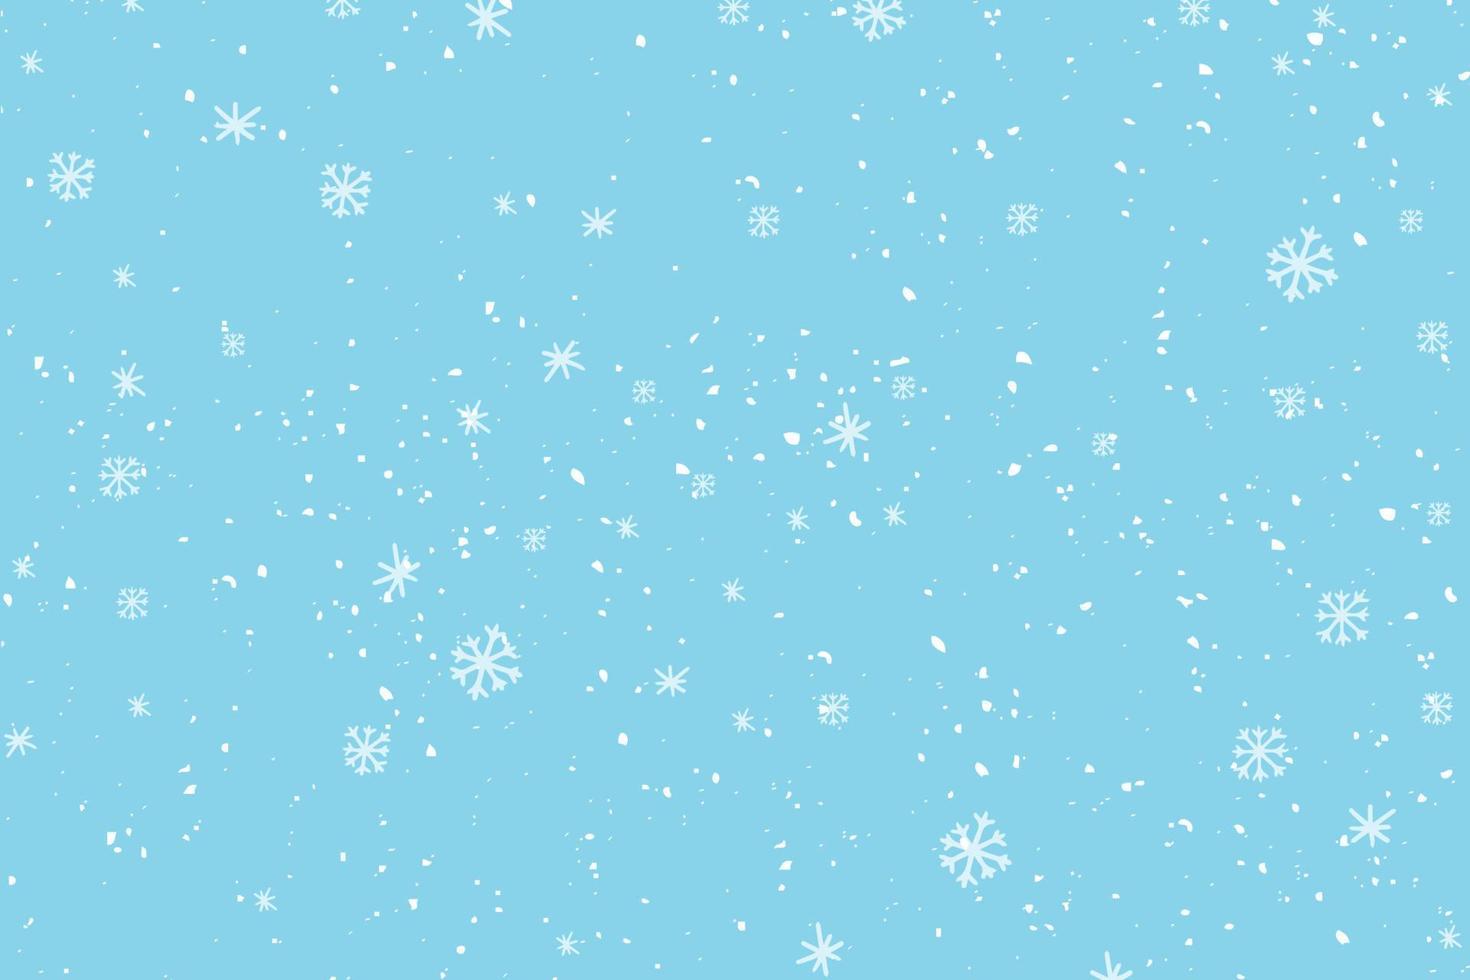 nevadas de invierno y copos de nieve sobre fondo azul claro. patrón de nieve dibujado a mano. garabato, frío, invierno, cielo, plano de fondo vector